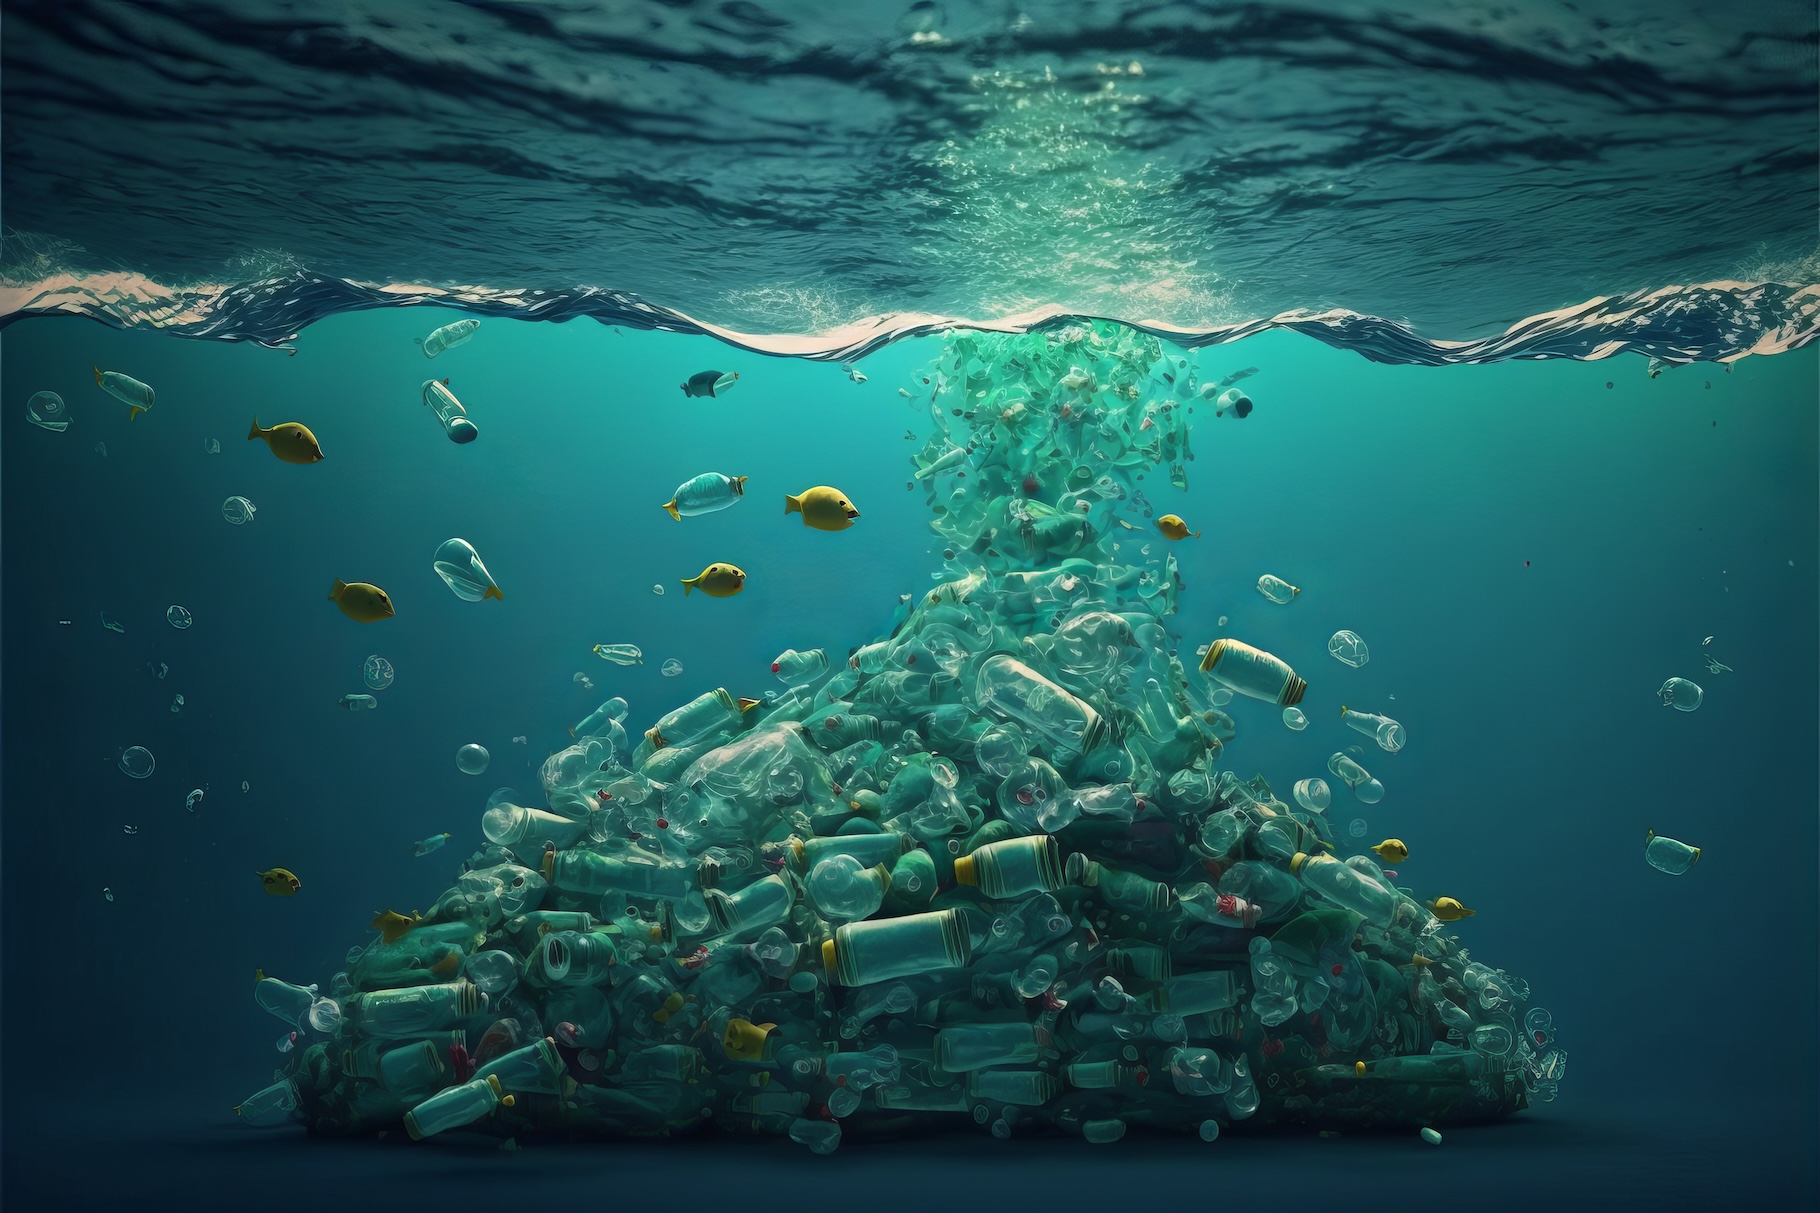 Des chercheurs de l’agence scientifique nationale australienne (CSIRO) estiment qu’il se trouve entre 3 et 11 millions de tonnes de déchets plastiques dans le fond de nos océans. © ink drop, Adobe Stock